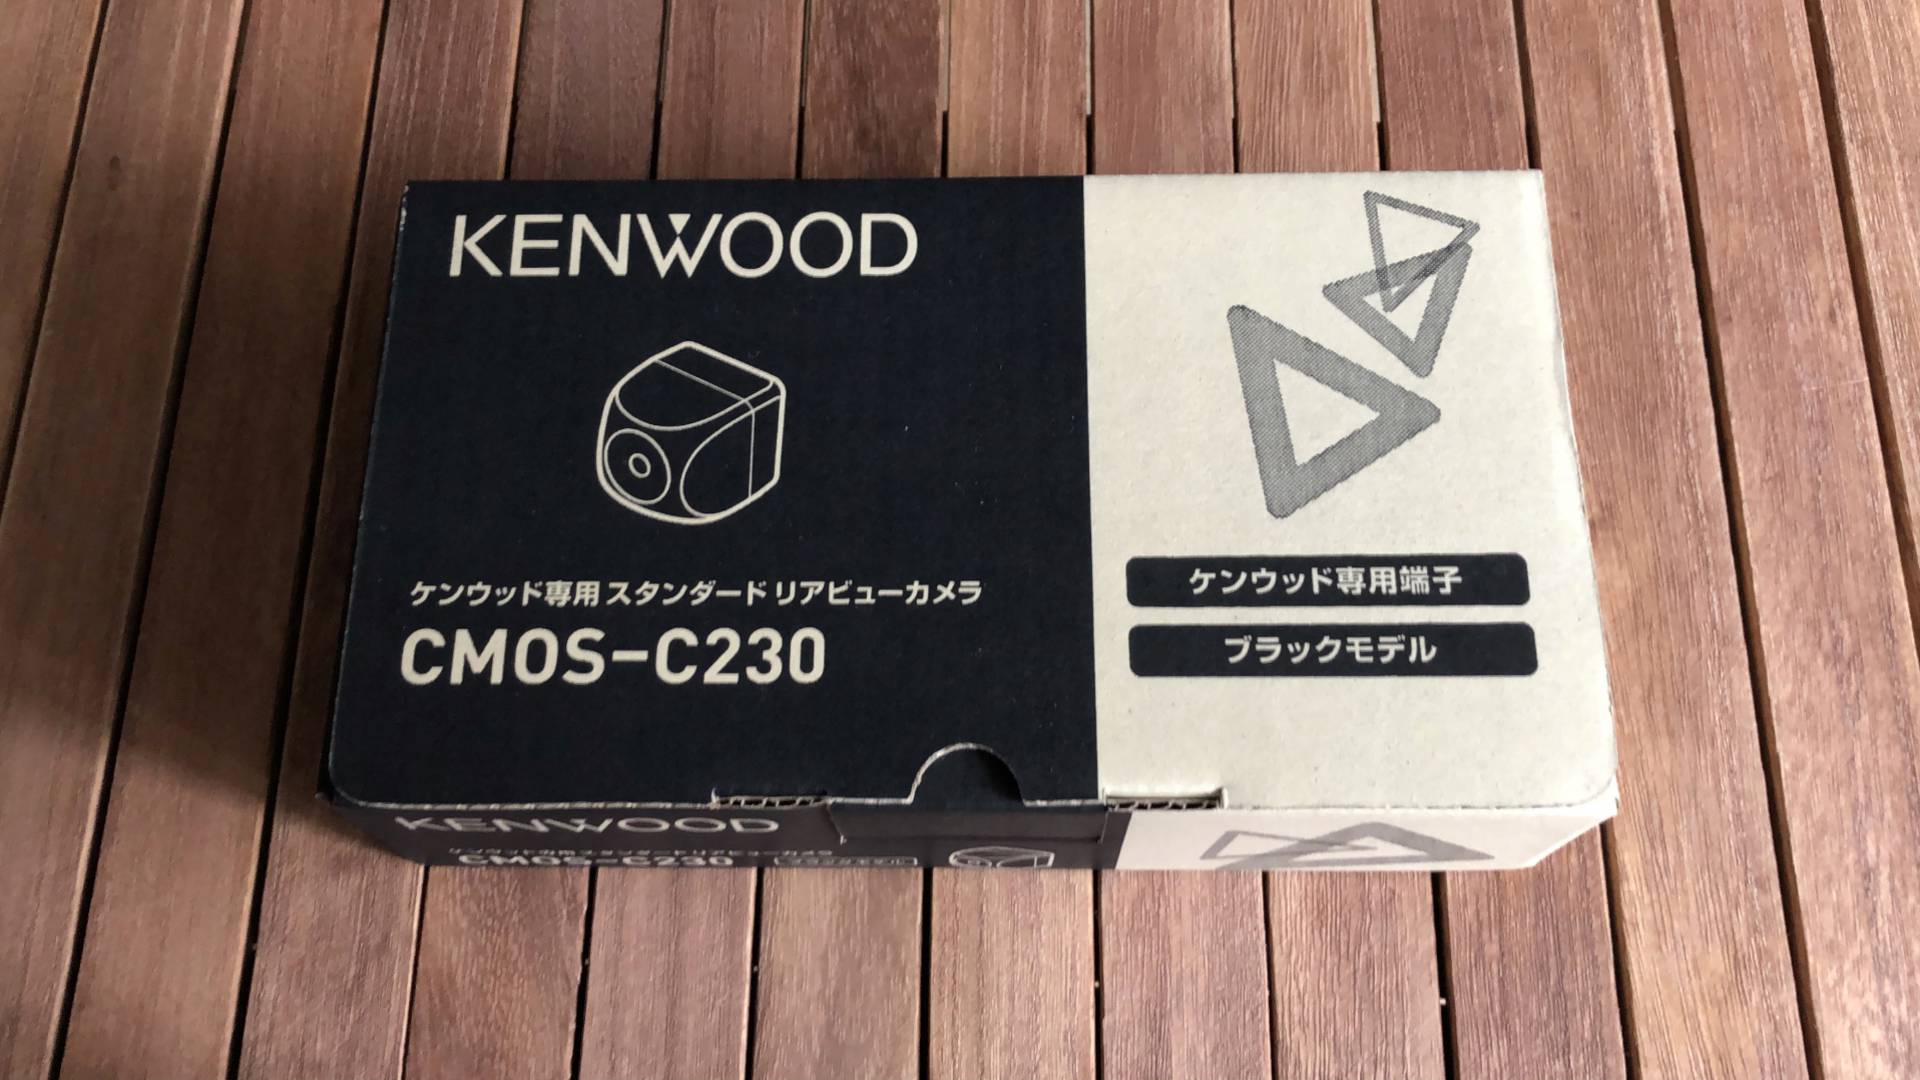 【軽バンカスタマイズ4】KENWOOD CMOS-C230リアビューカメラの取付け